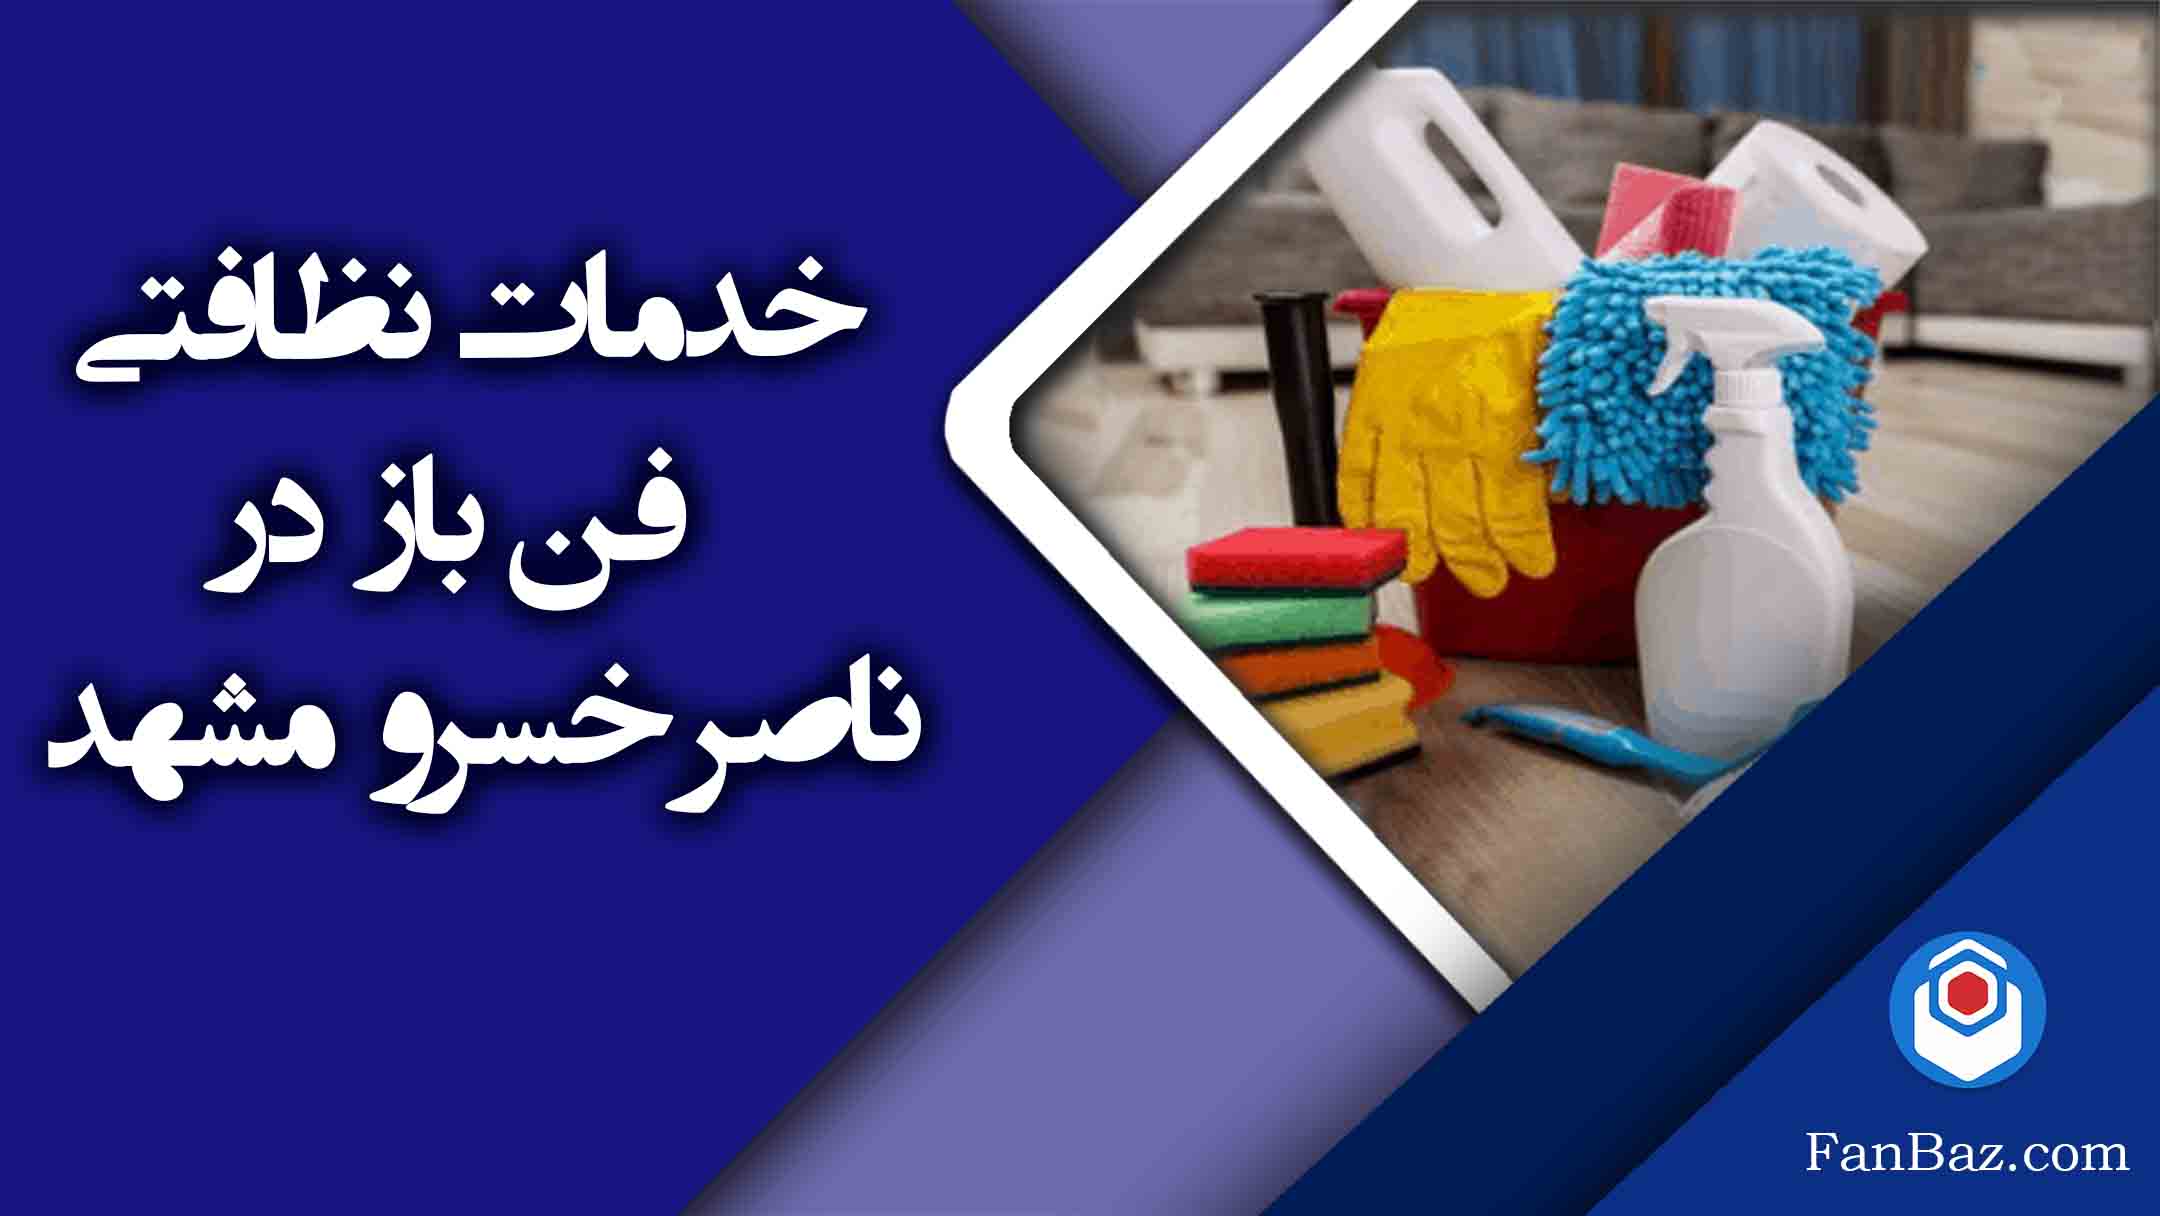 خدمات نظافتی فن باز در ناصر خسرو